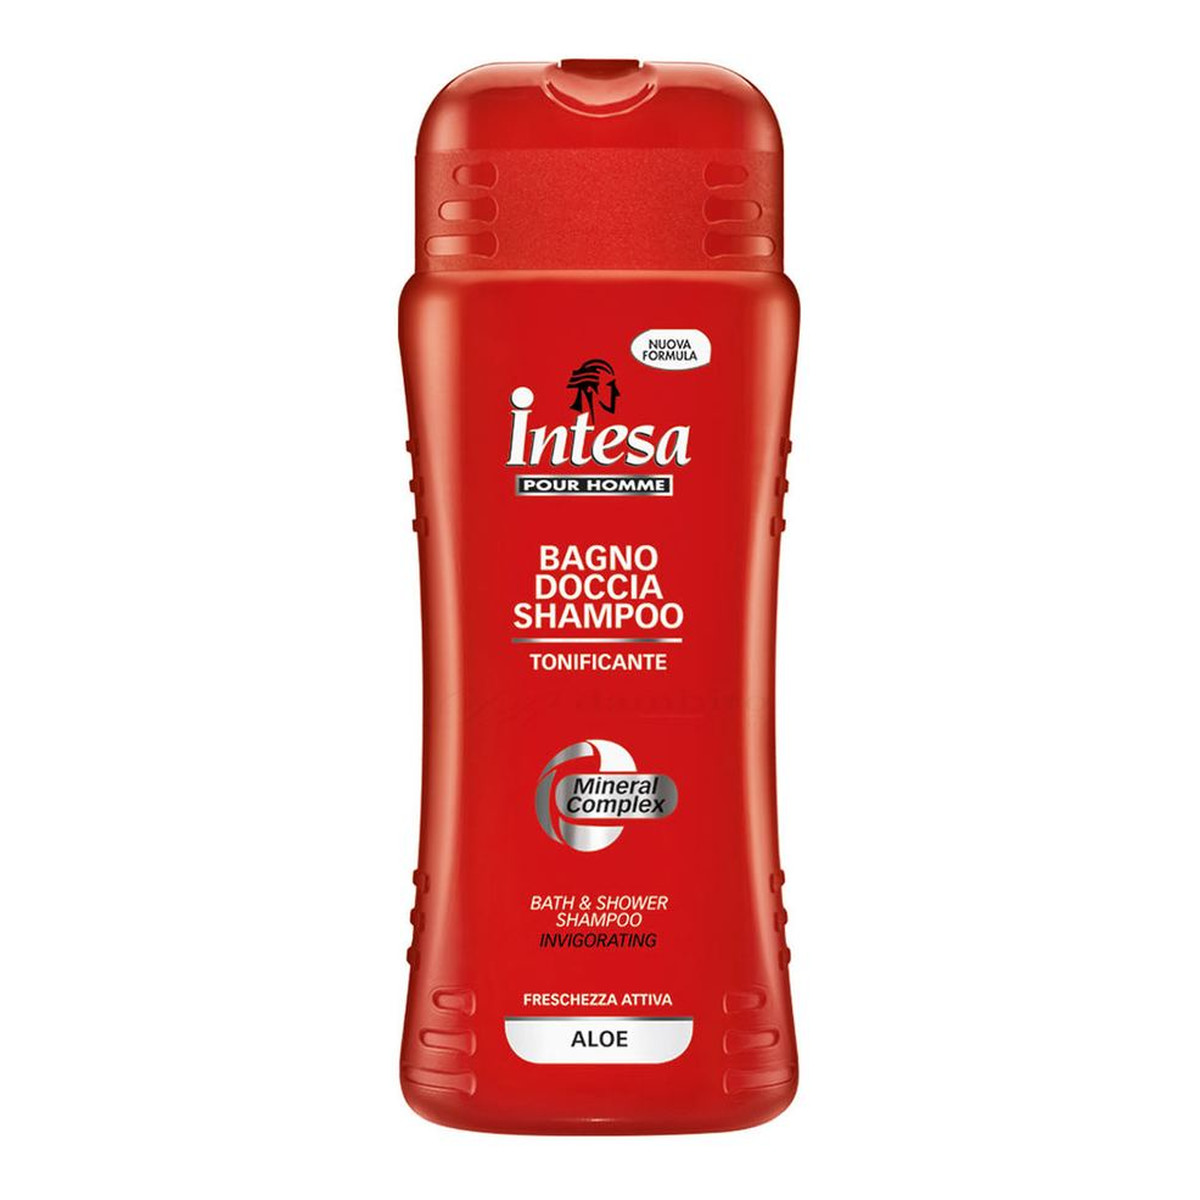 Intesa Aloe bath & shower shampoo pour homme płyn do kąpieli i szampon dla mężczyzn 500ml